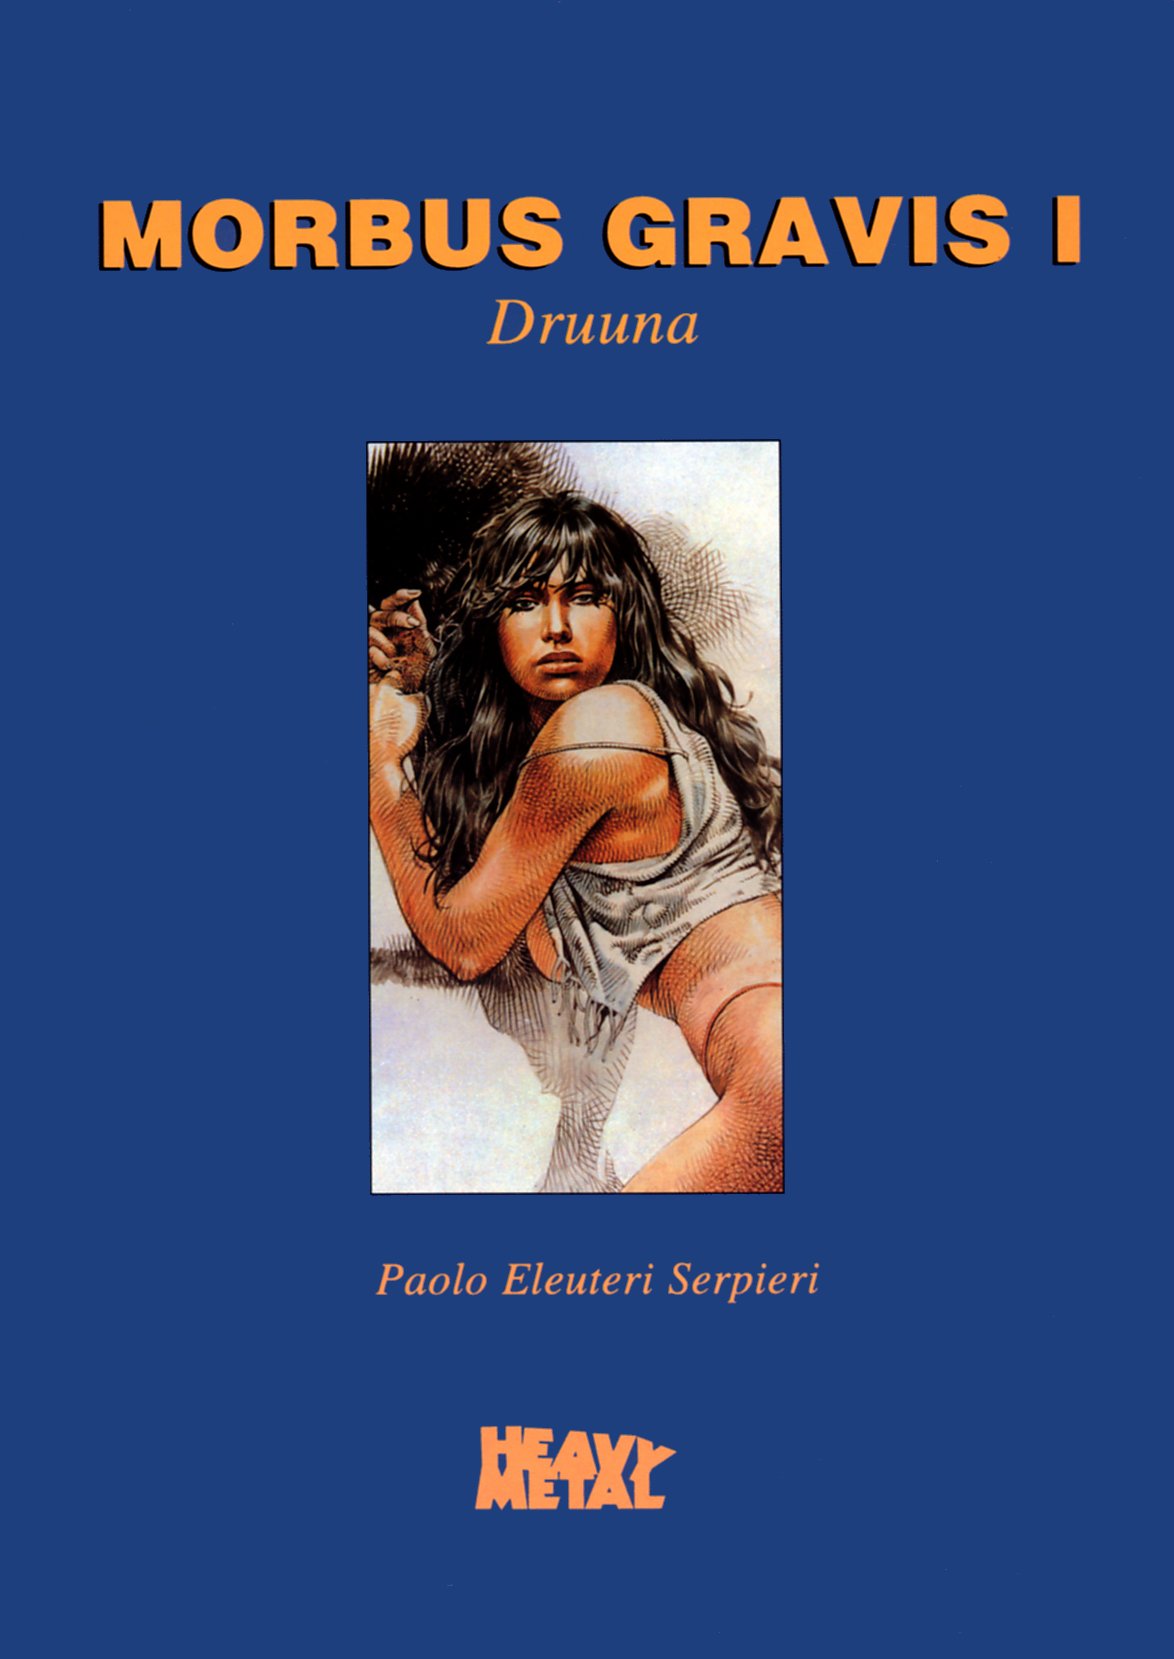 [Eleuteri Serpieri] Druuna Vol. 1 - Morbus Gravis I (Español) 